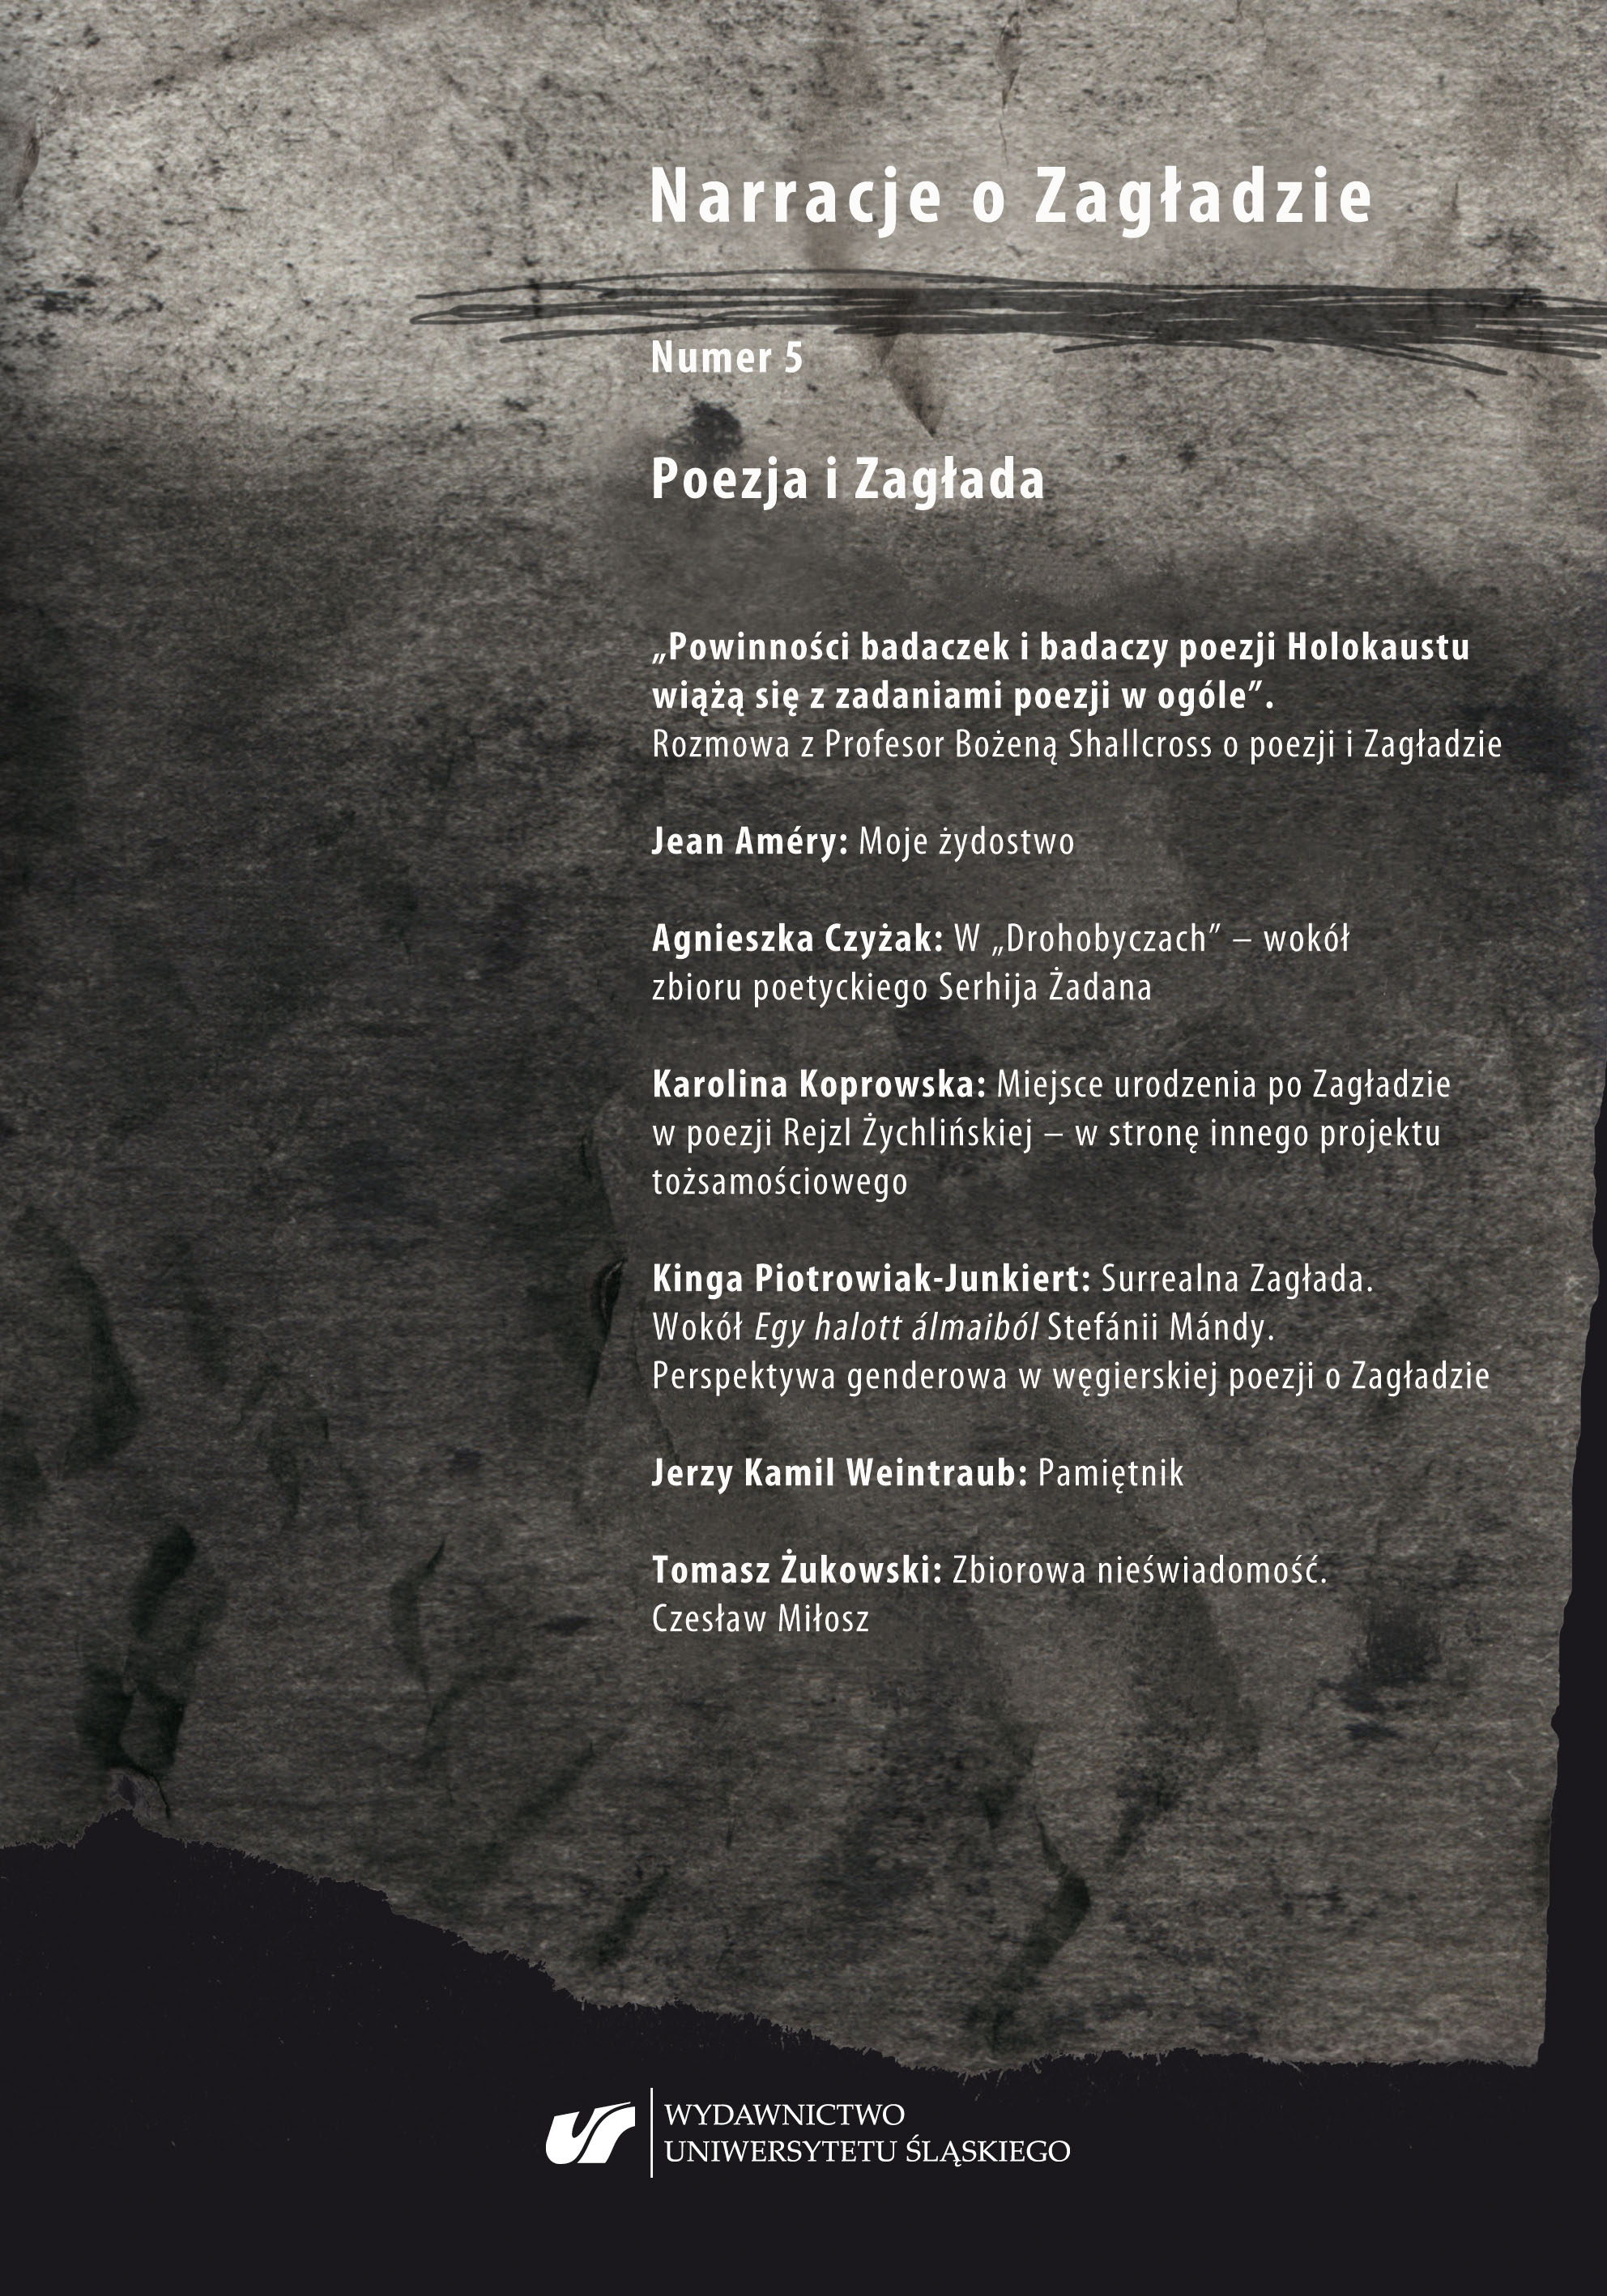 Neighbouring the Shoah
Karolina Koprowska: Postronni? Zagłada w relacjach chłopskich świadków. Kraków, Universitas, 2018, ss. 216. Cover Image